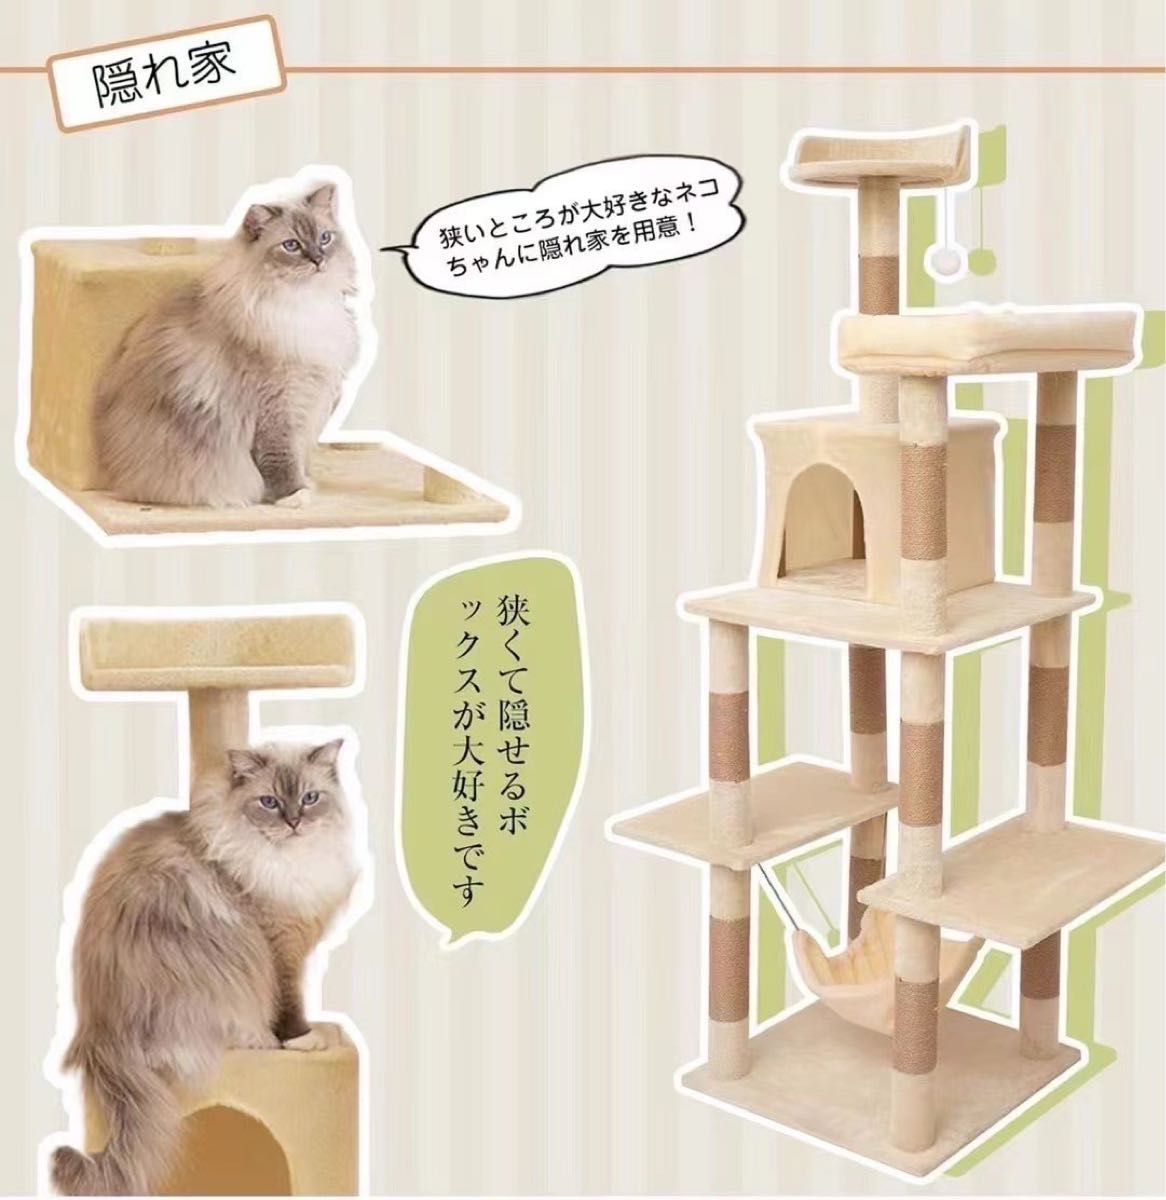 【キャットタワー】木製 猫用 据え置き型 猫タワー ハンモック 爪とぎ 大型猫 省スペース 据え置き 猫 スリム